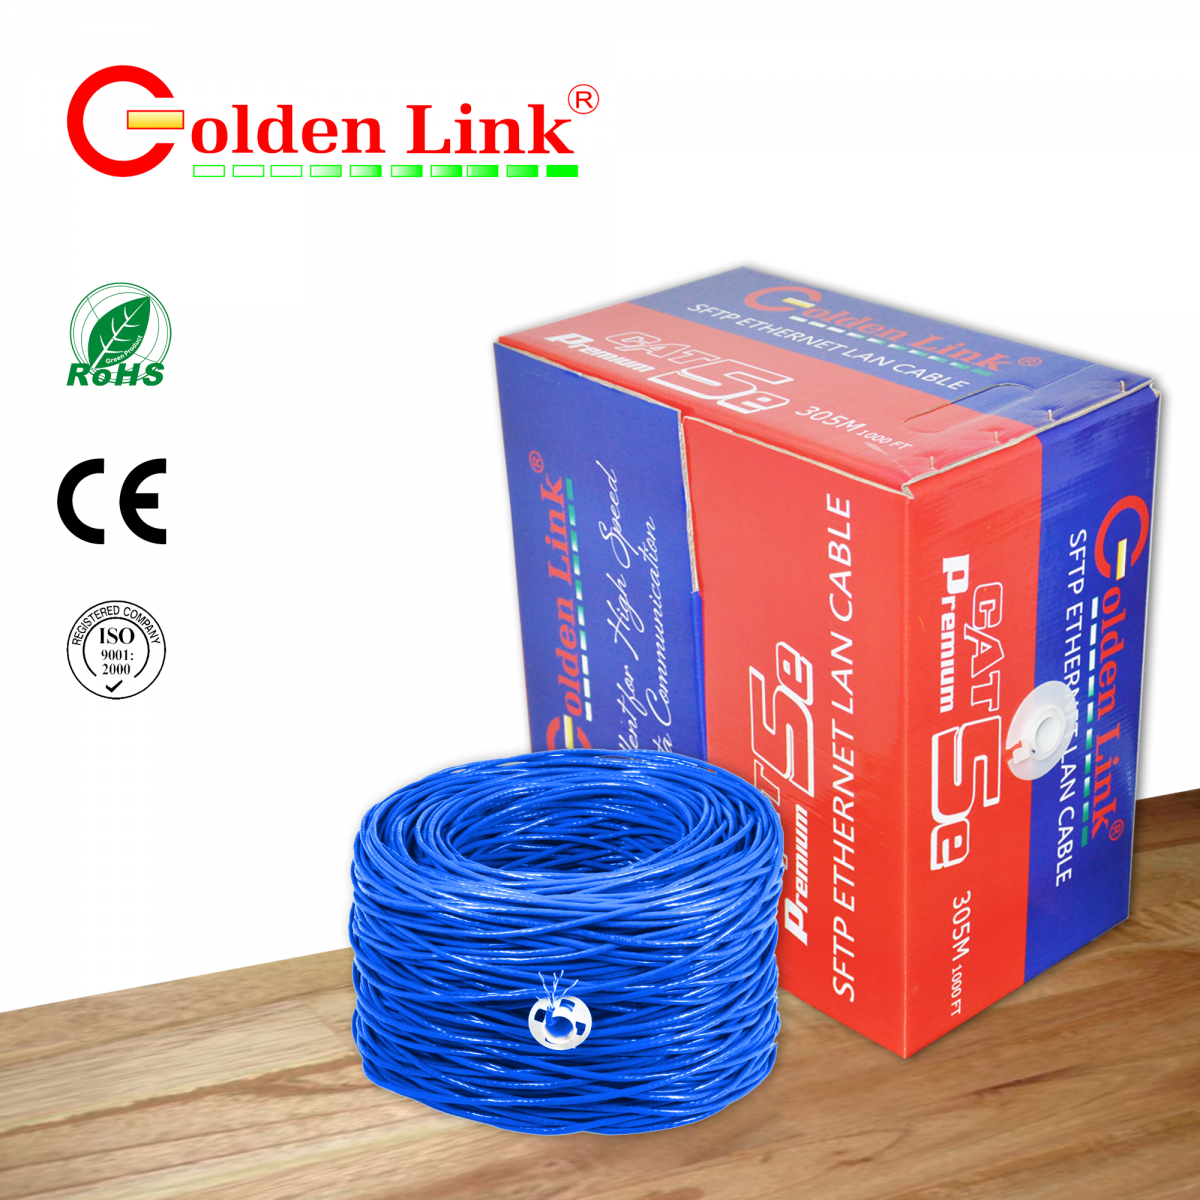 Cable Golden Link - 4 pair SFTP Cat 5e chống nhiễu 305m chống nhiễu